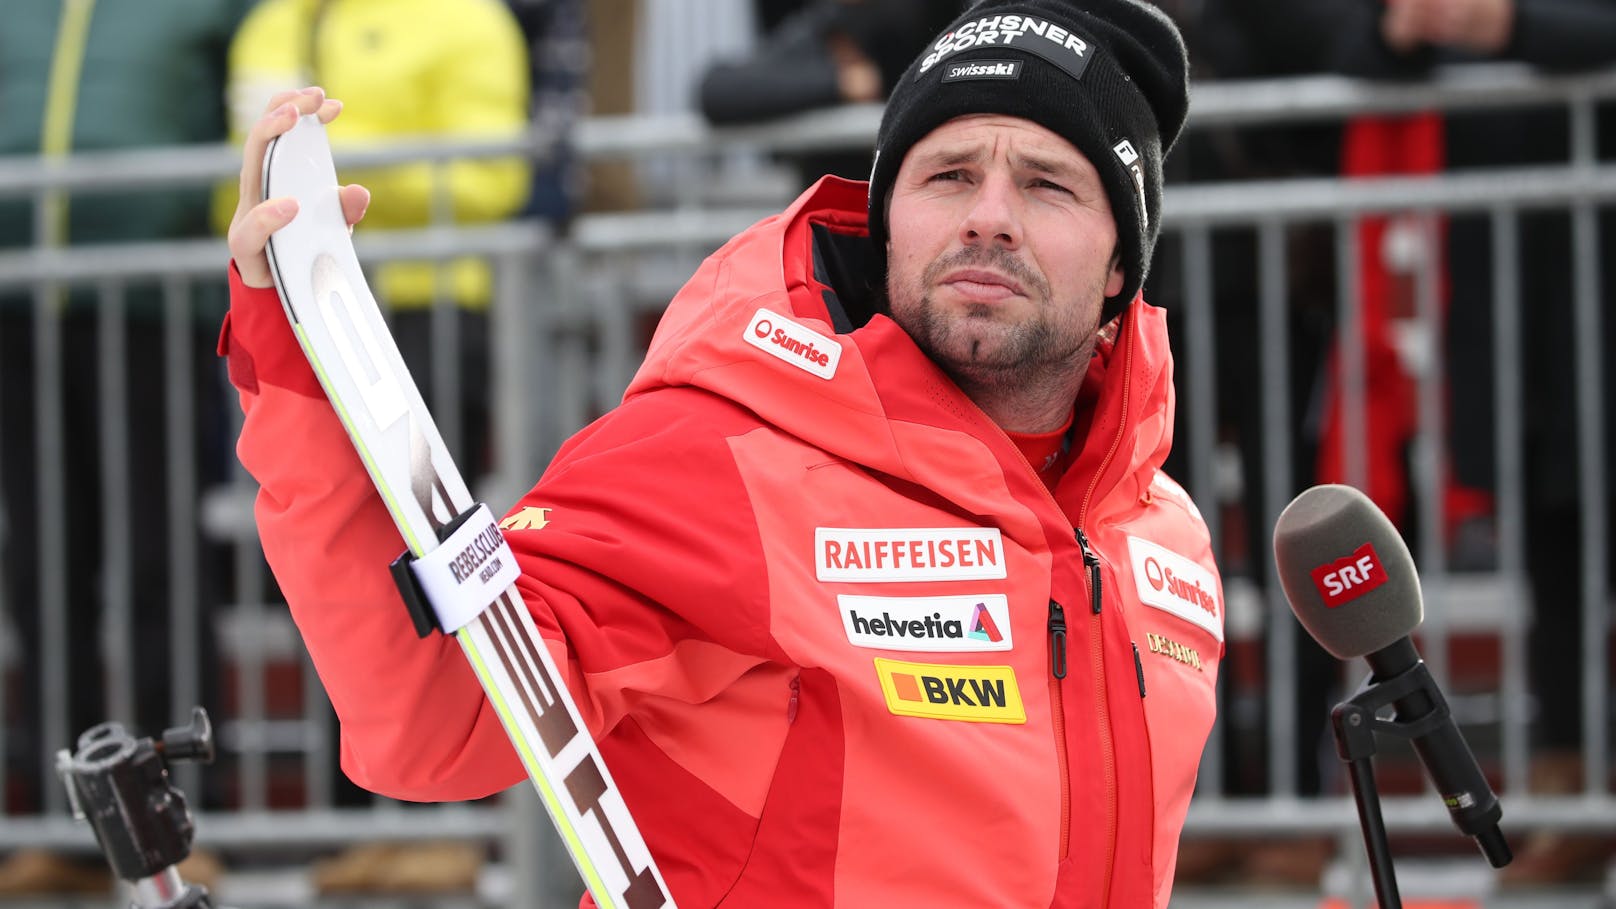 "Zu gefährlich!" Ski-Topstar verweigert Kamerafahrt